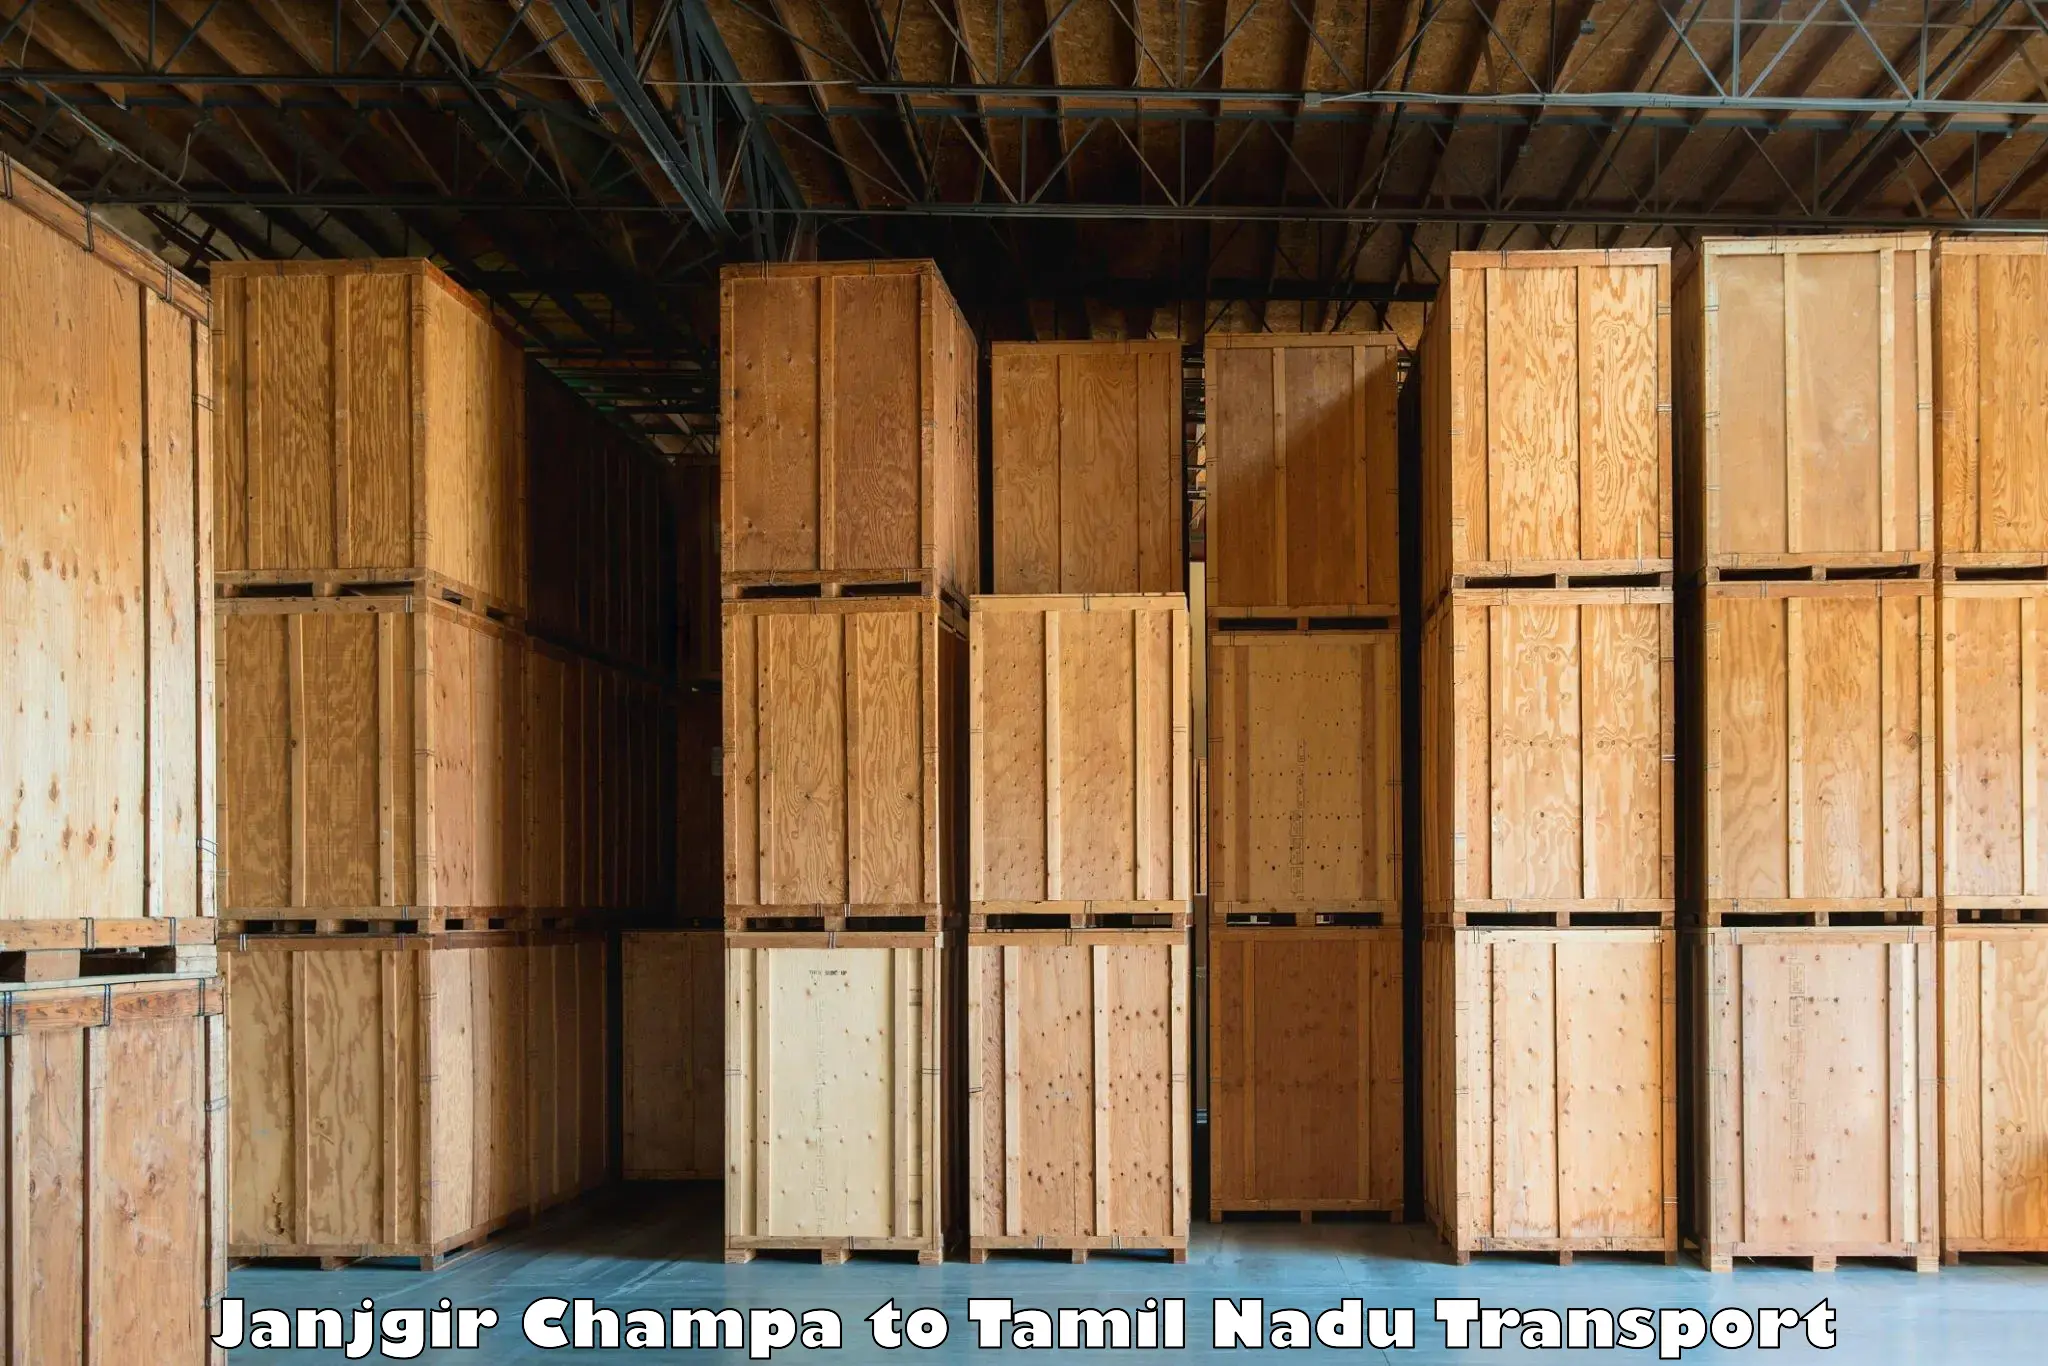 Online transport booking Janjgir Champa to Nagapattinam